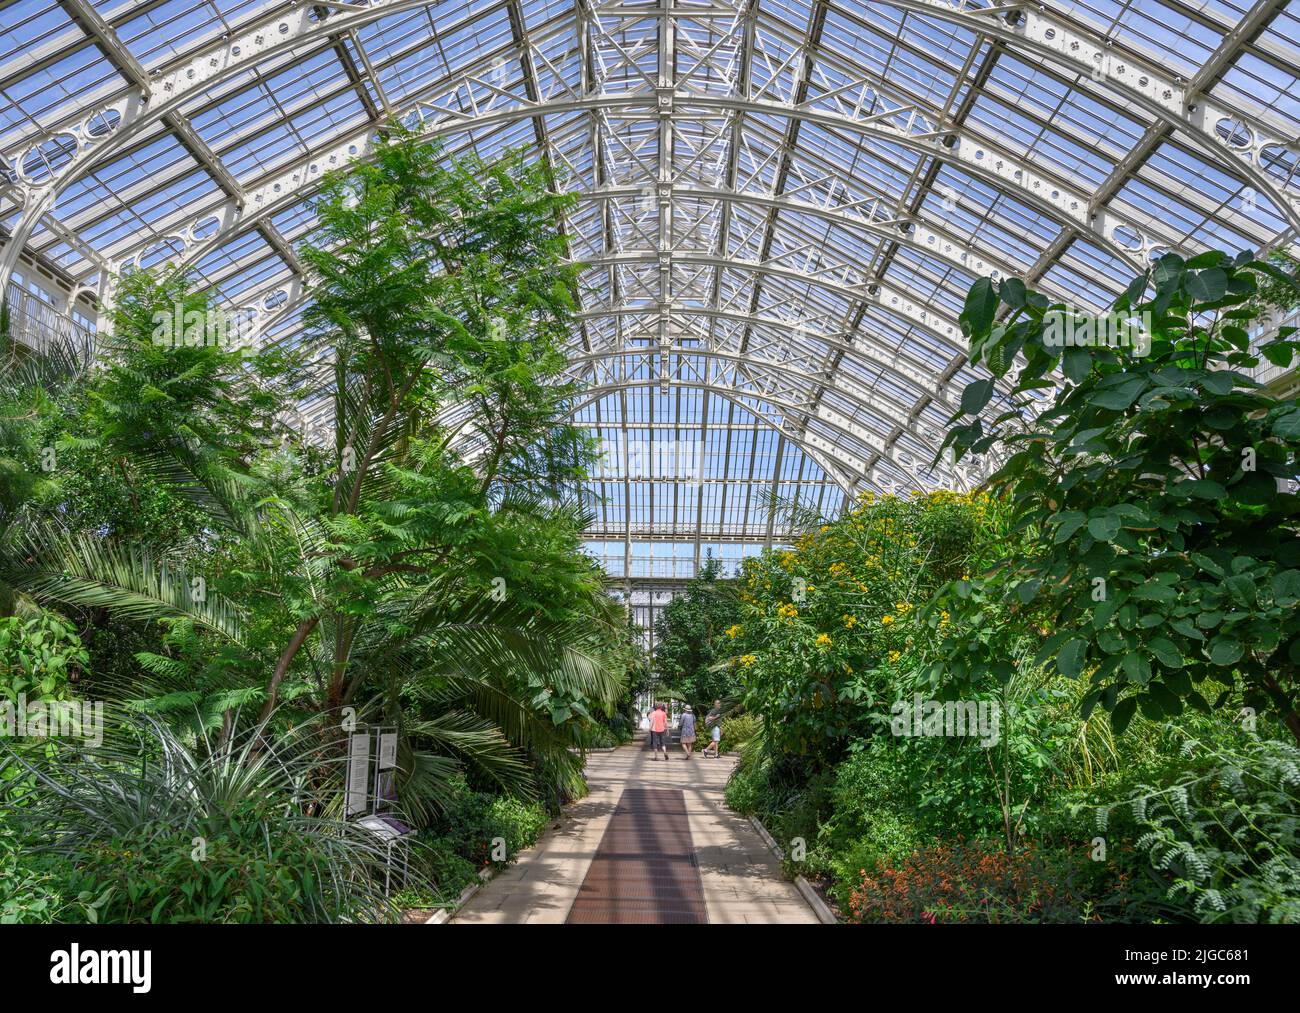 Intérieur de la maison Temperate, Kew Gardens, Richmond, Londres, Angleterre, ROYAUME-UNI Banque D'Images